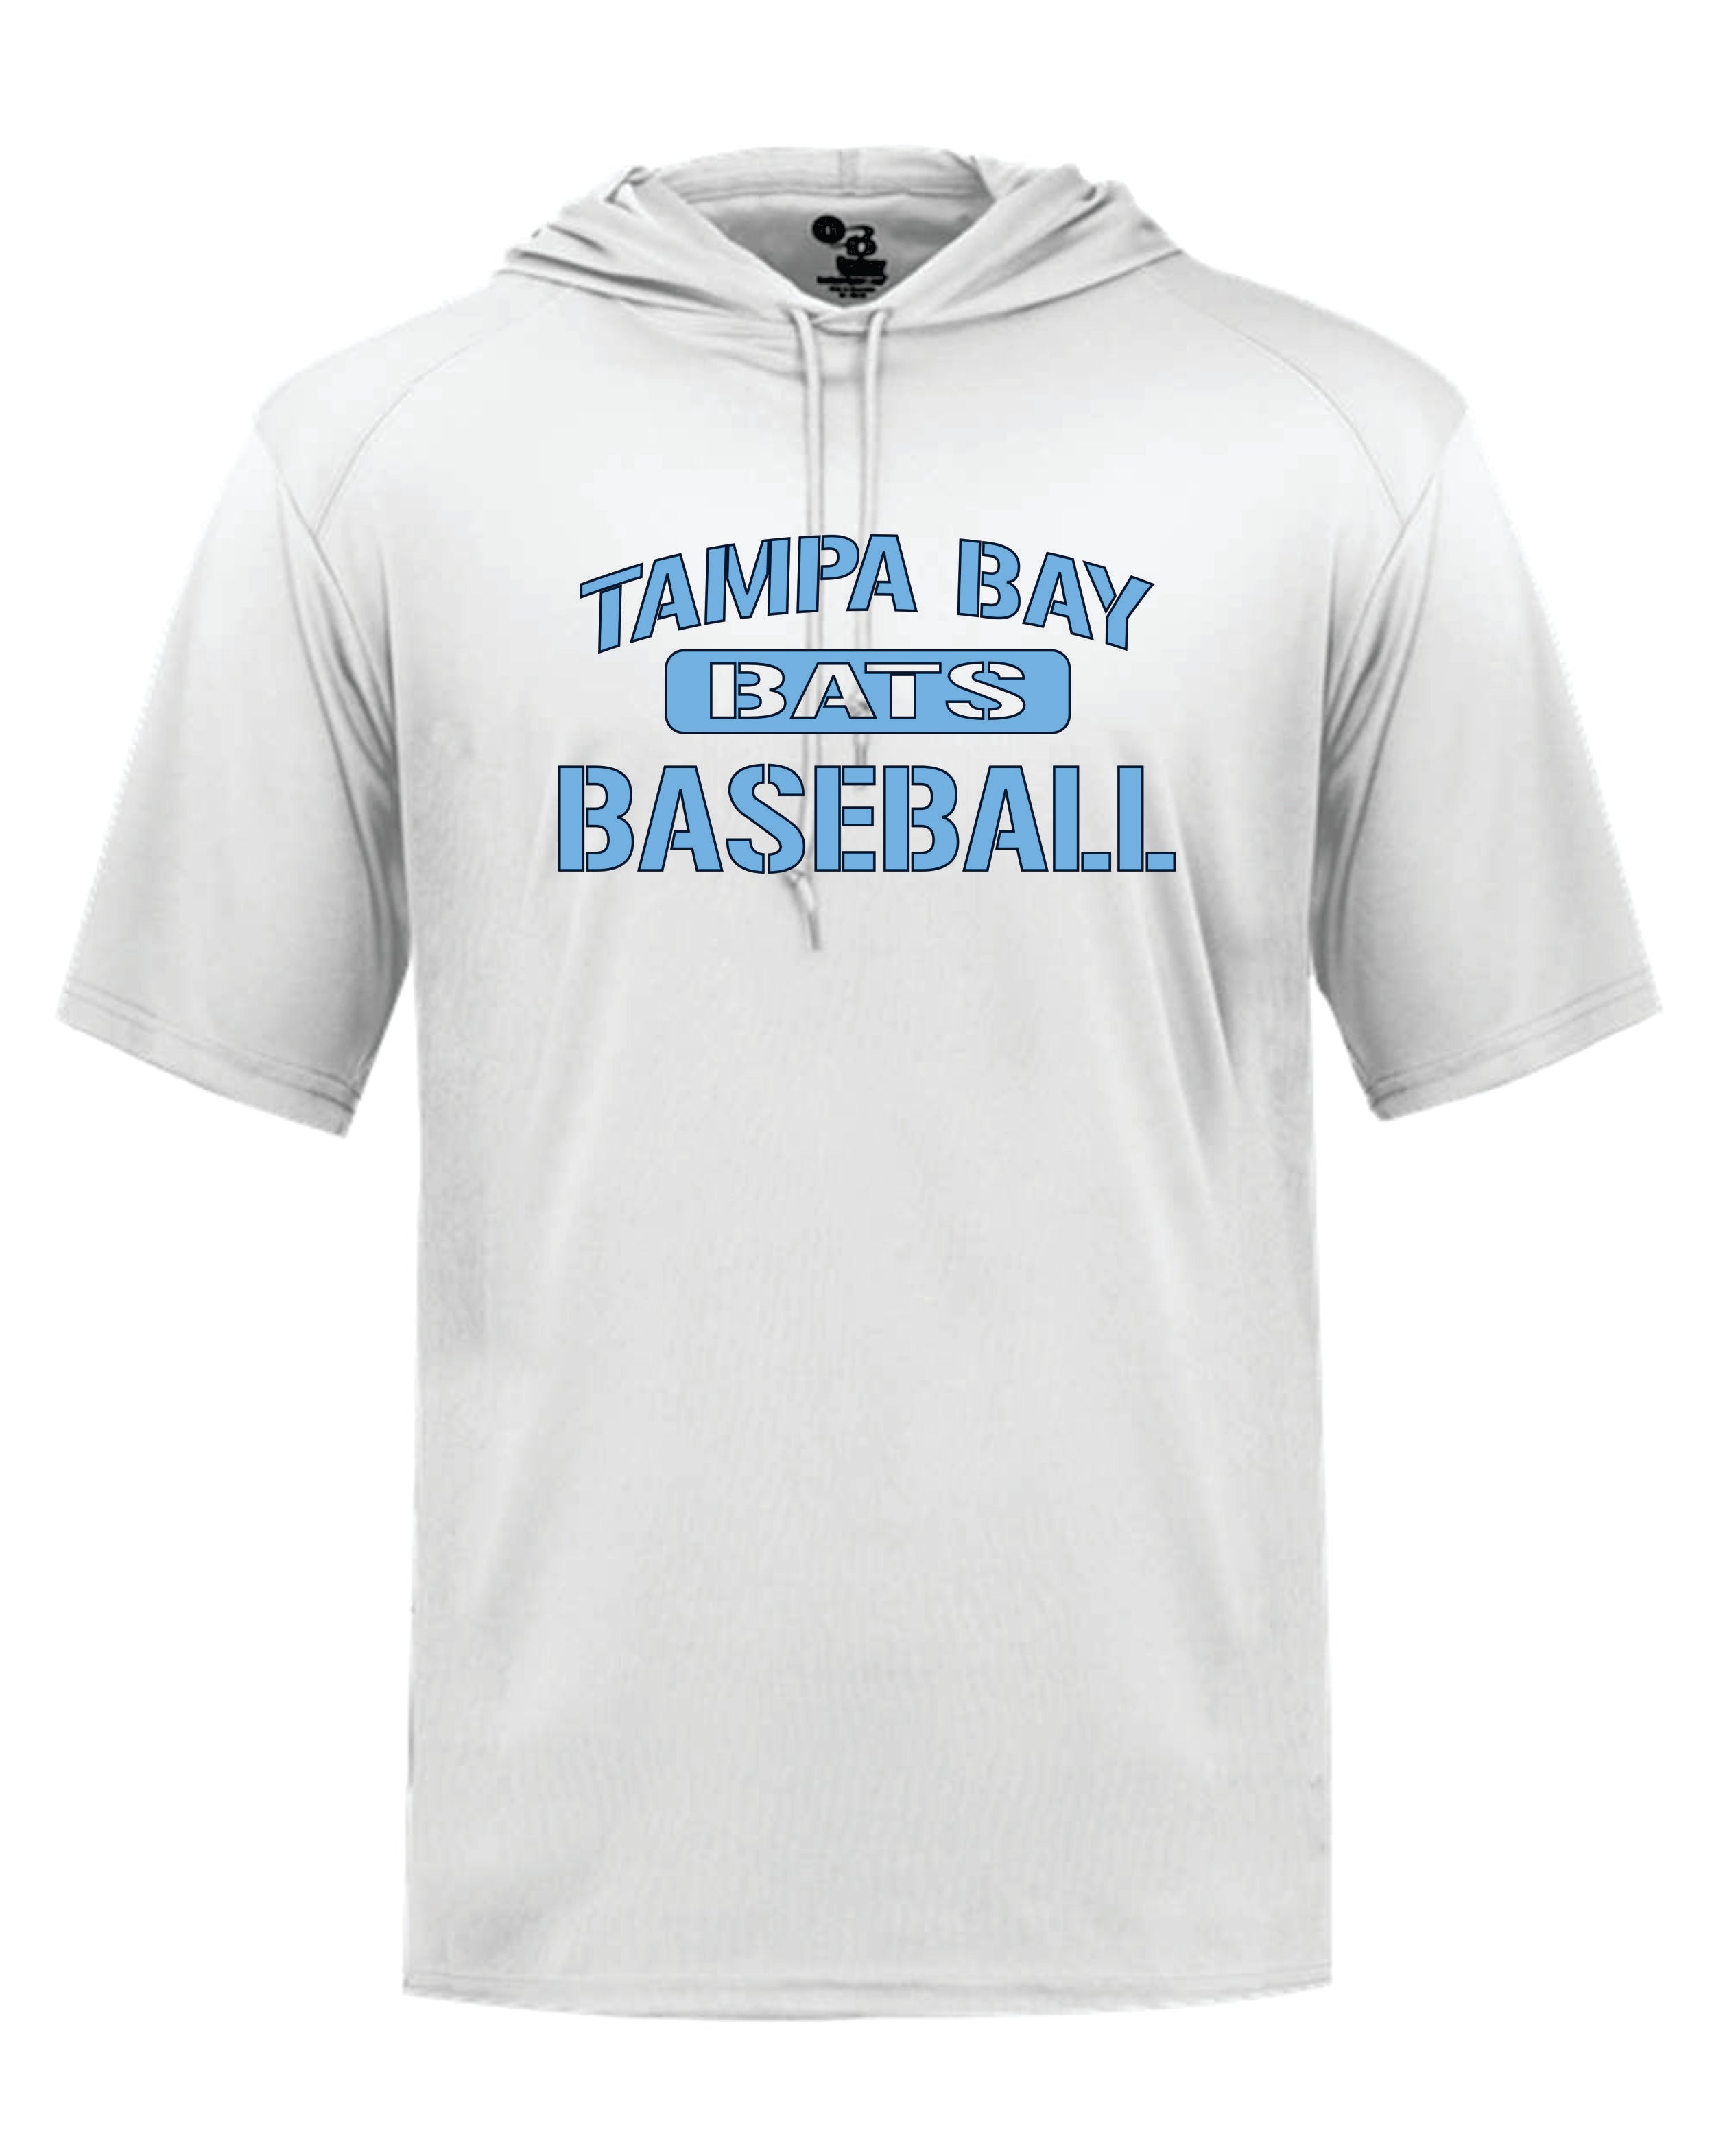 Tampa Bay Bats Braves Badger SS hooded shirt YOUTH